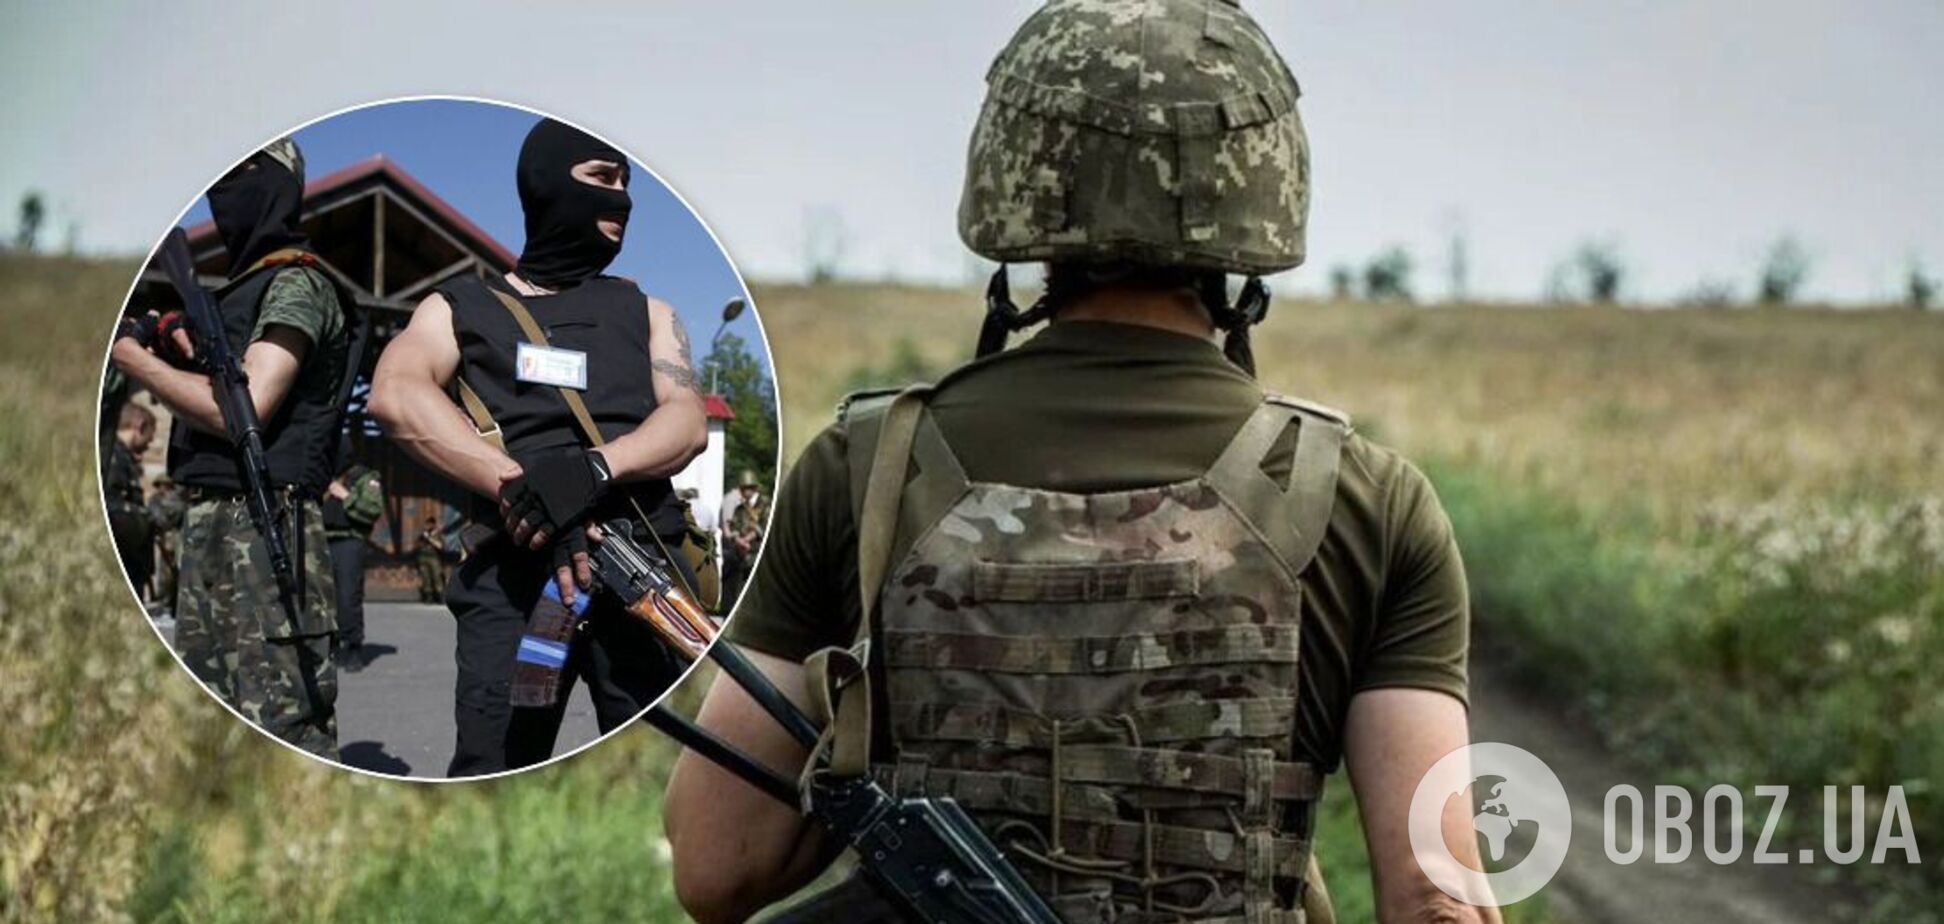 Терористи на Донбасі відкрили вогонь по ЗСУ: в ООС повідомили про порушення перемир'я